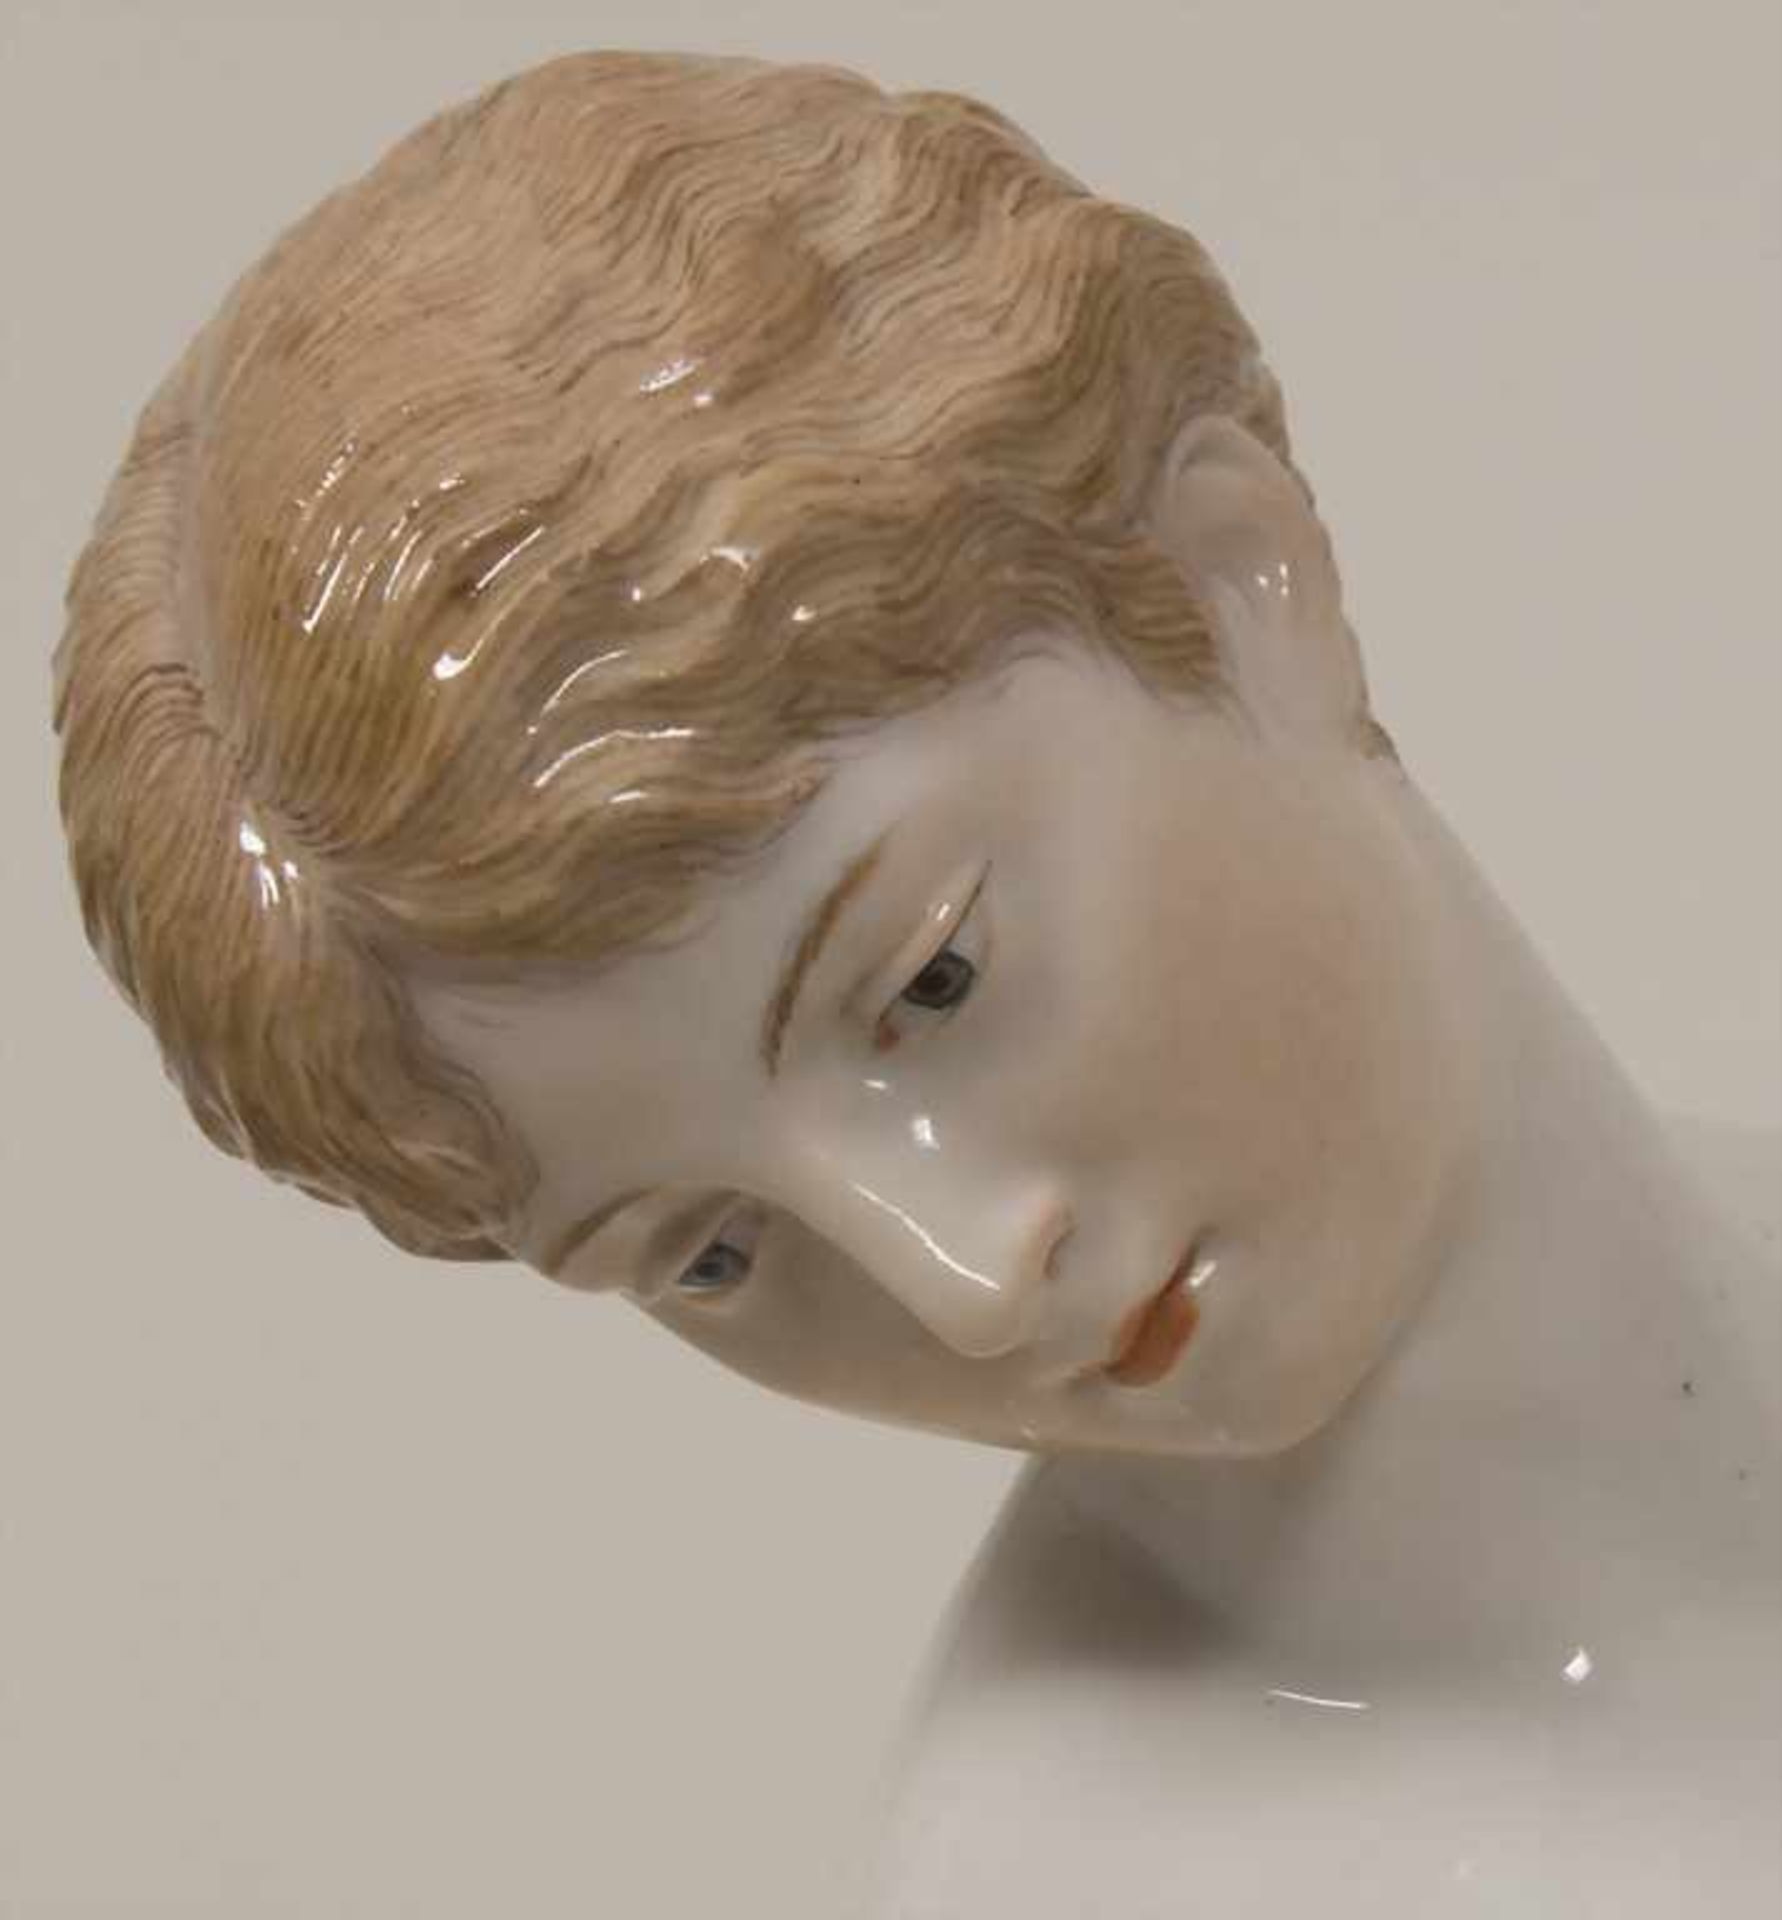 Porzellanfigur 'Nach dem Bade' / A porcelain figure 'After the bath', Robert Ockelmann (1849-1915) - Image 7 of 9